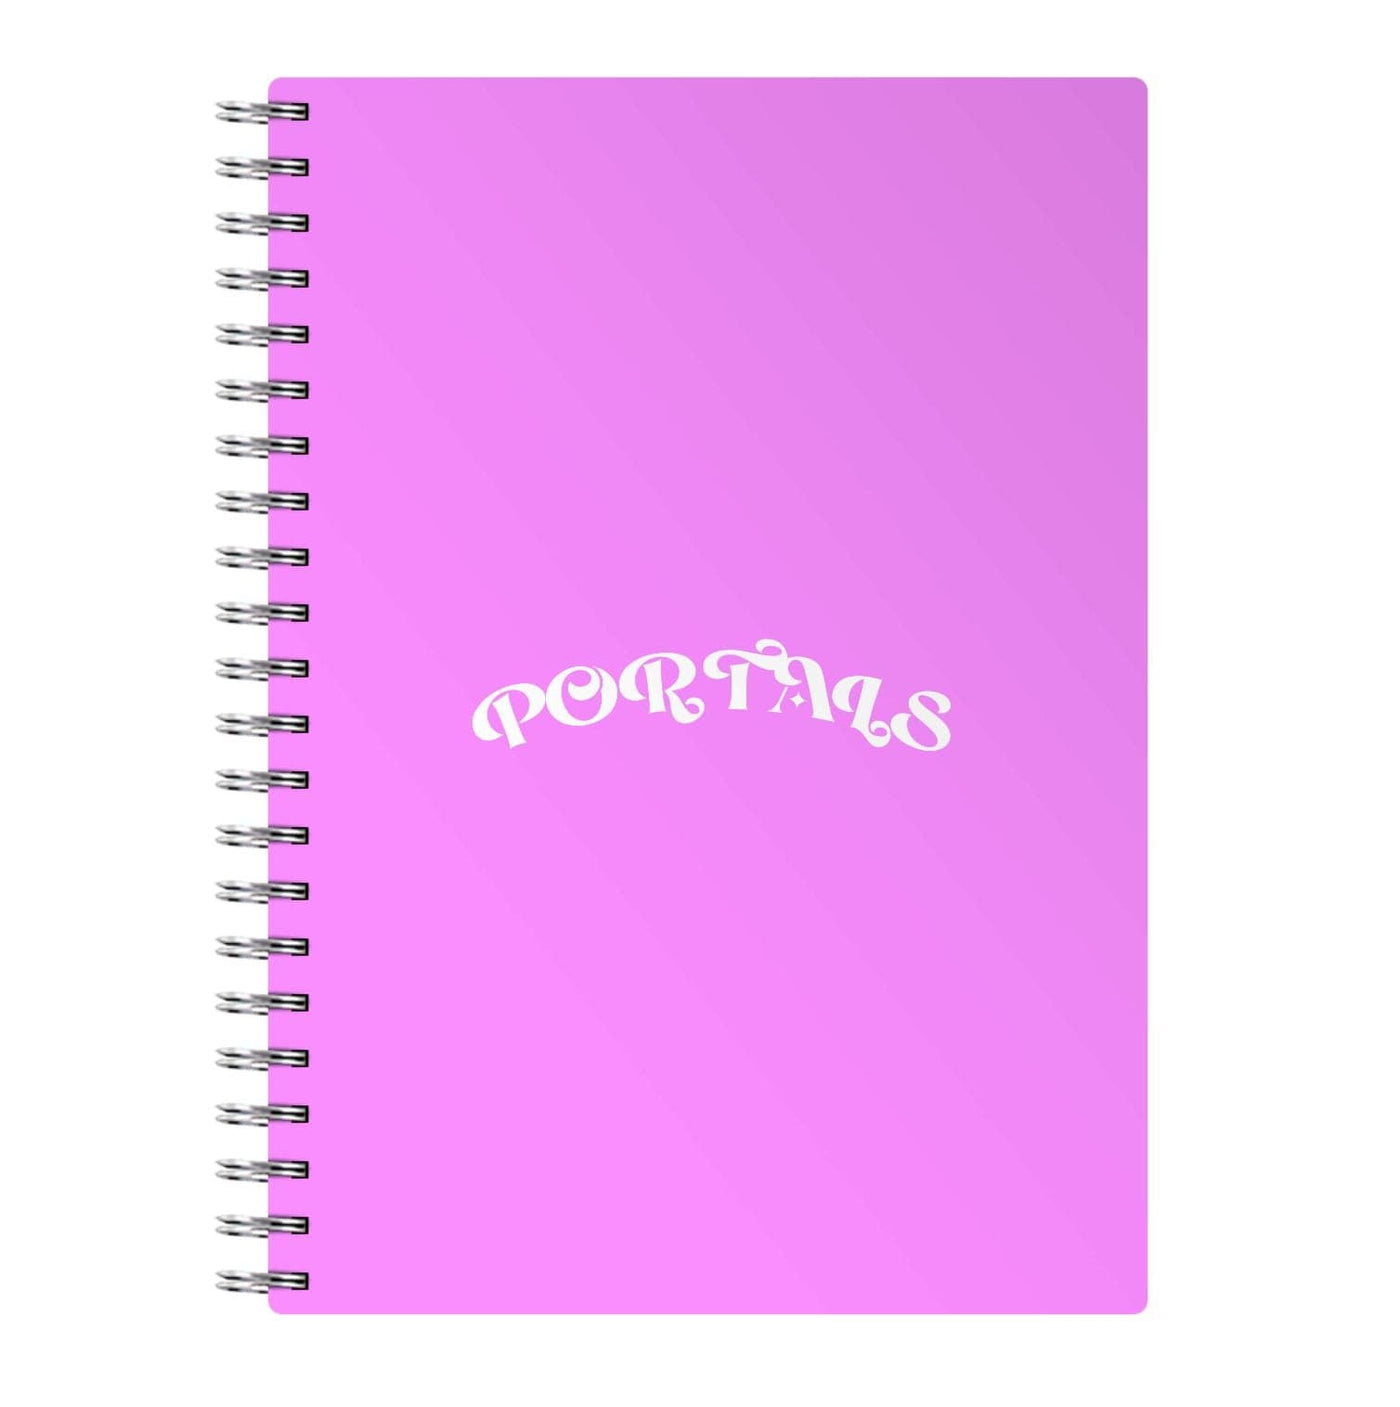 Portals - Melanie Martinez Notebook